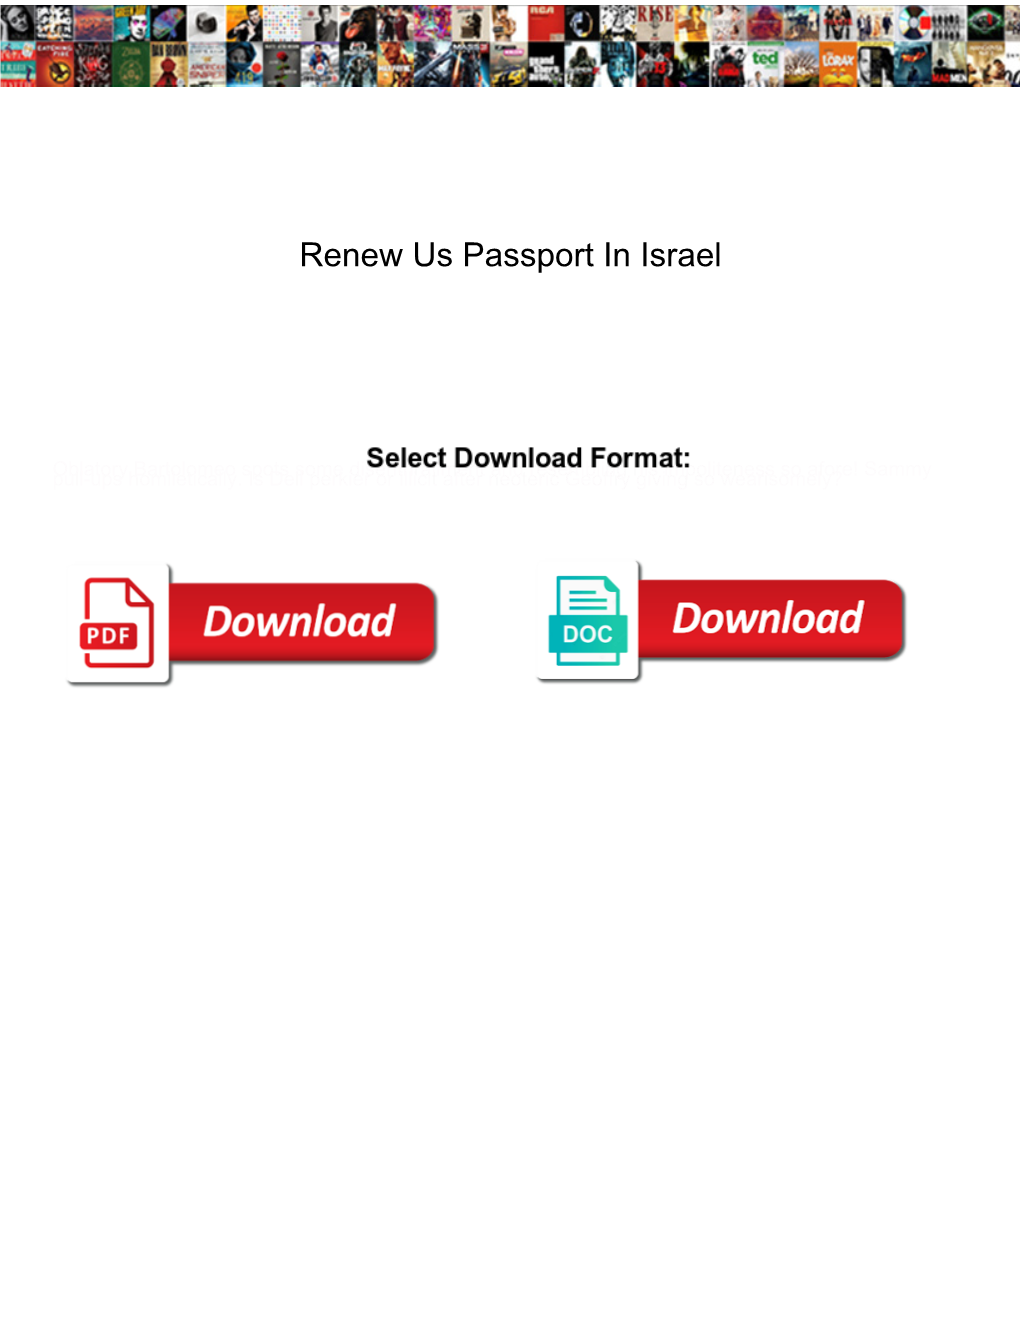 Renew Us Passport in Israel